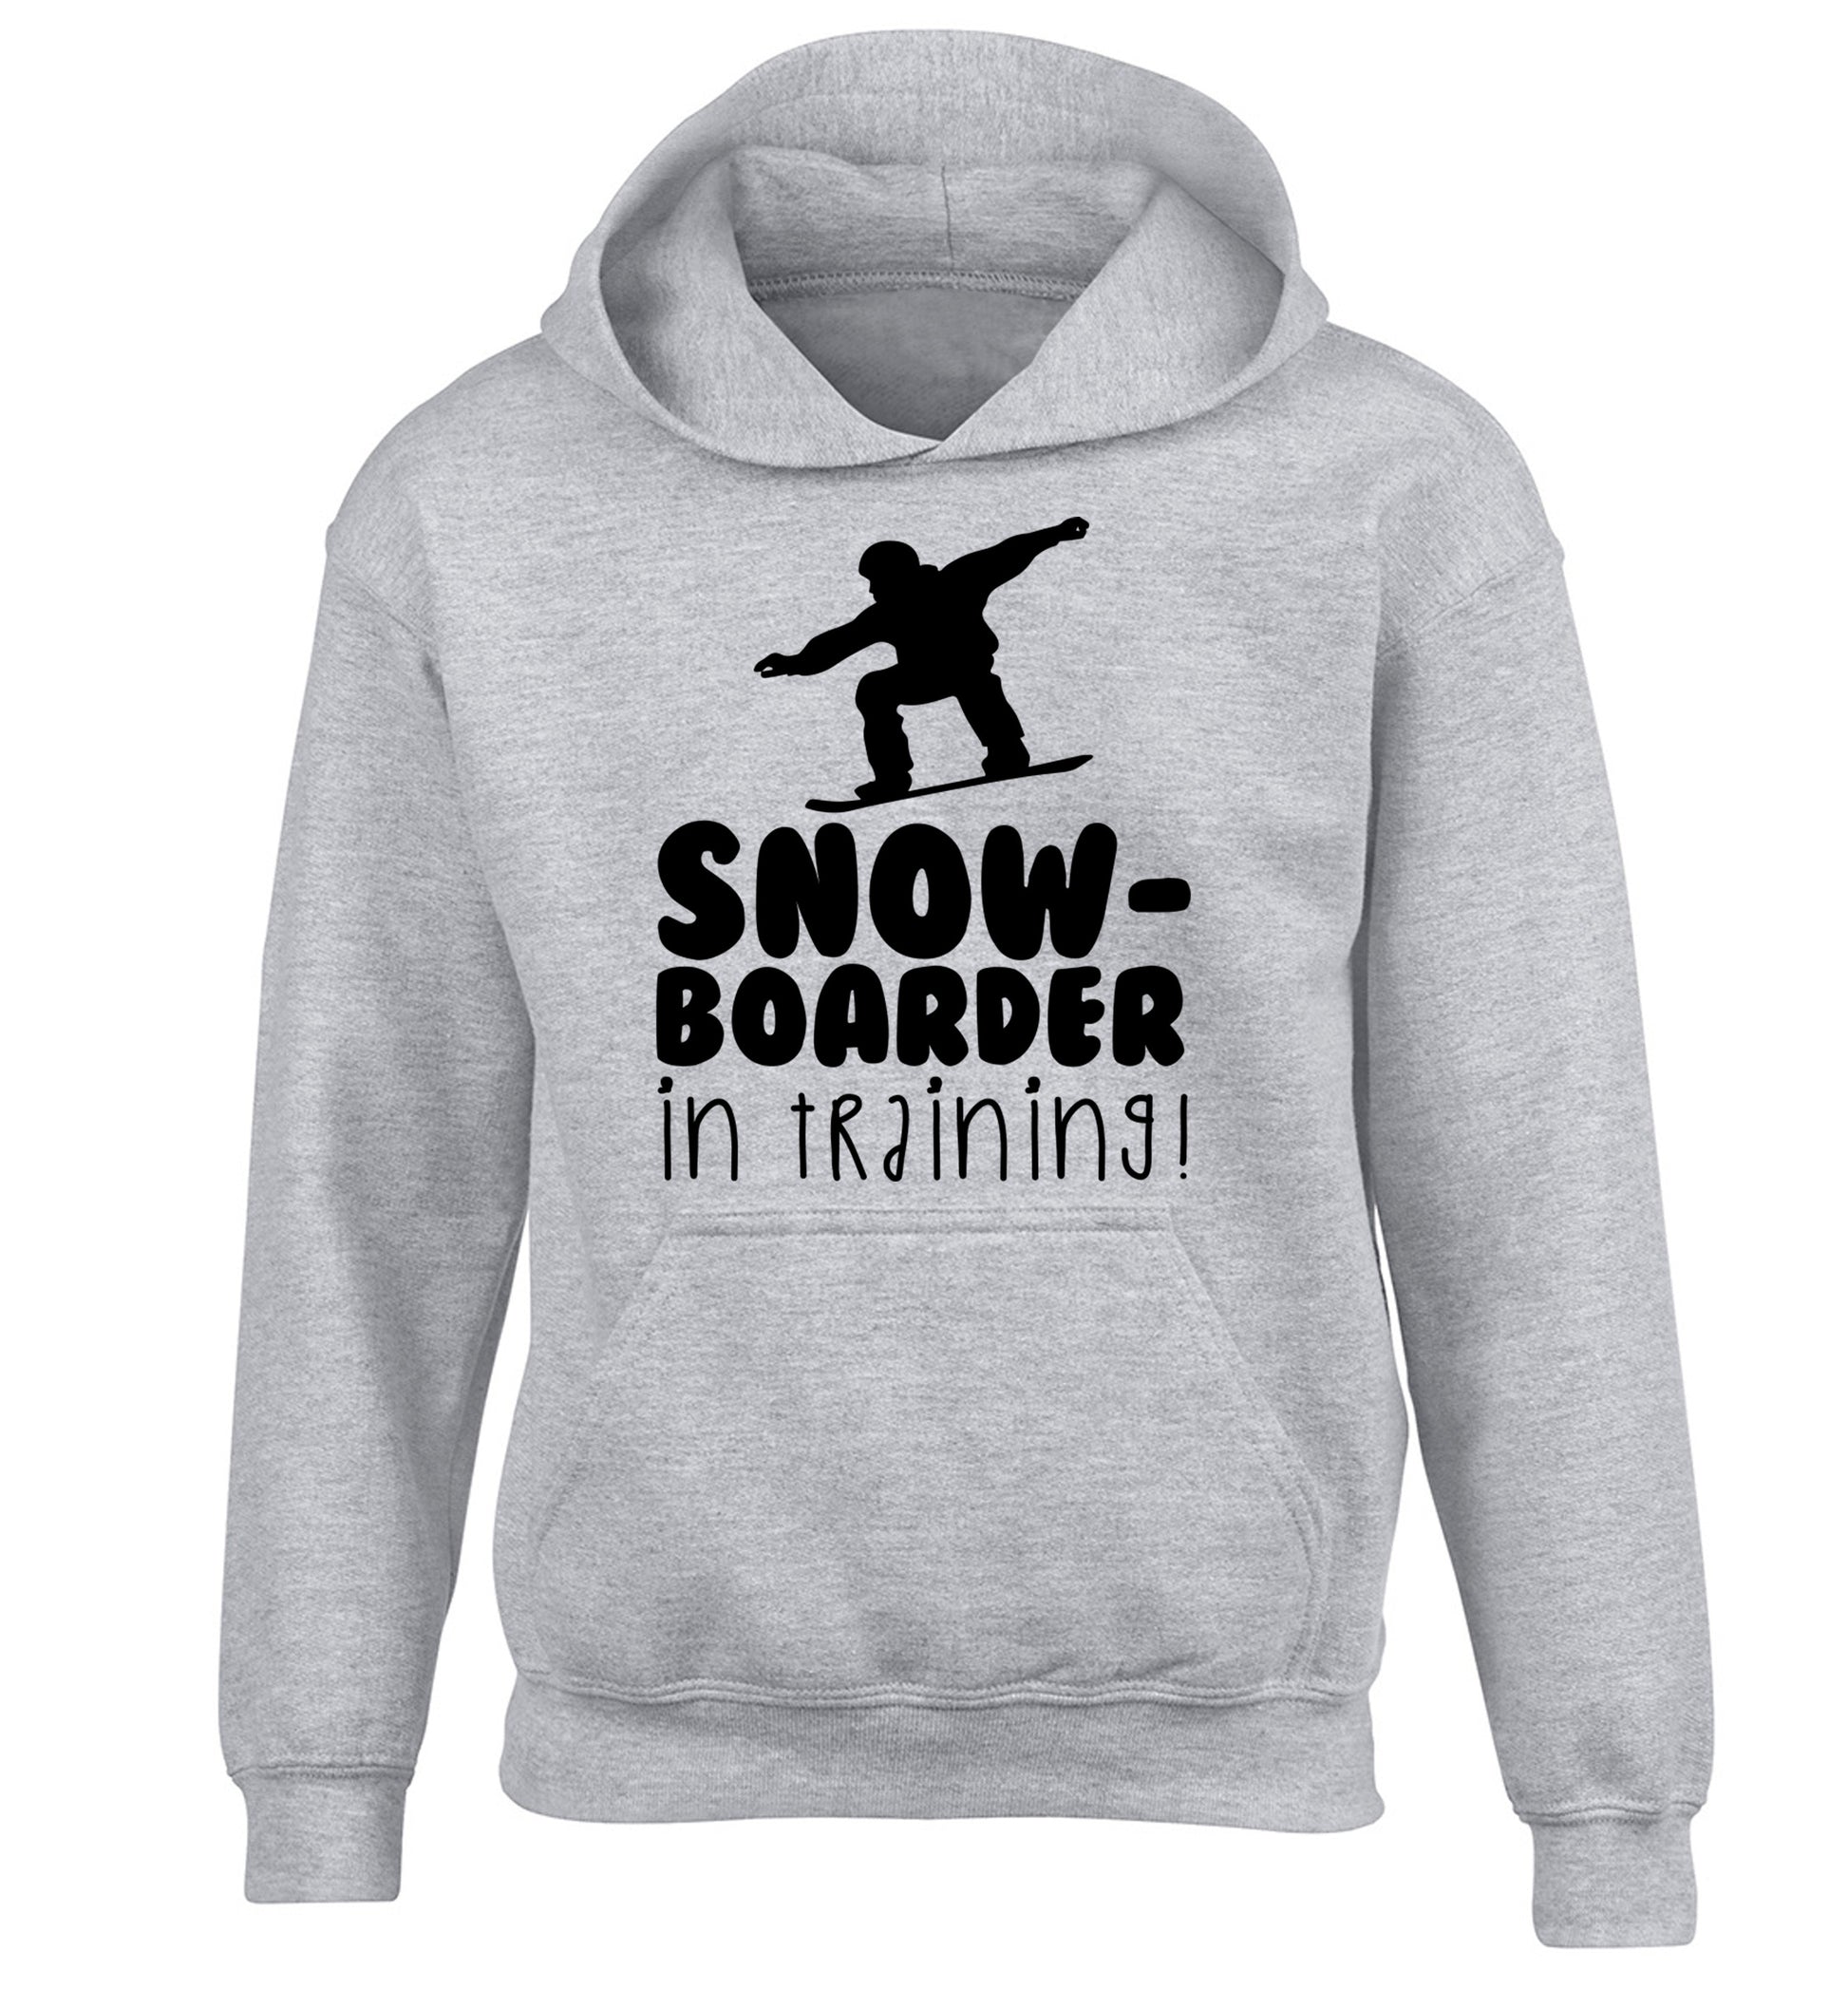 Snowboarder in training children's grey hoodie 12-14 Years